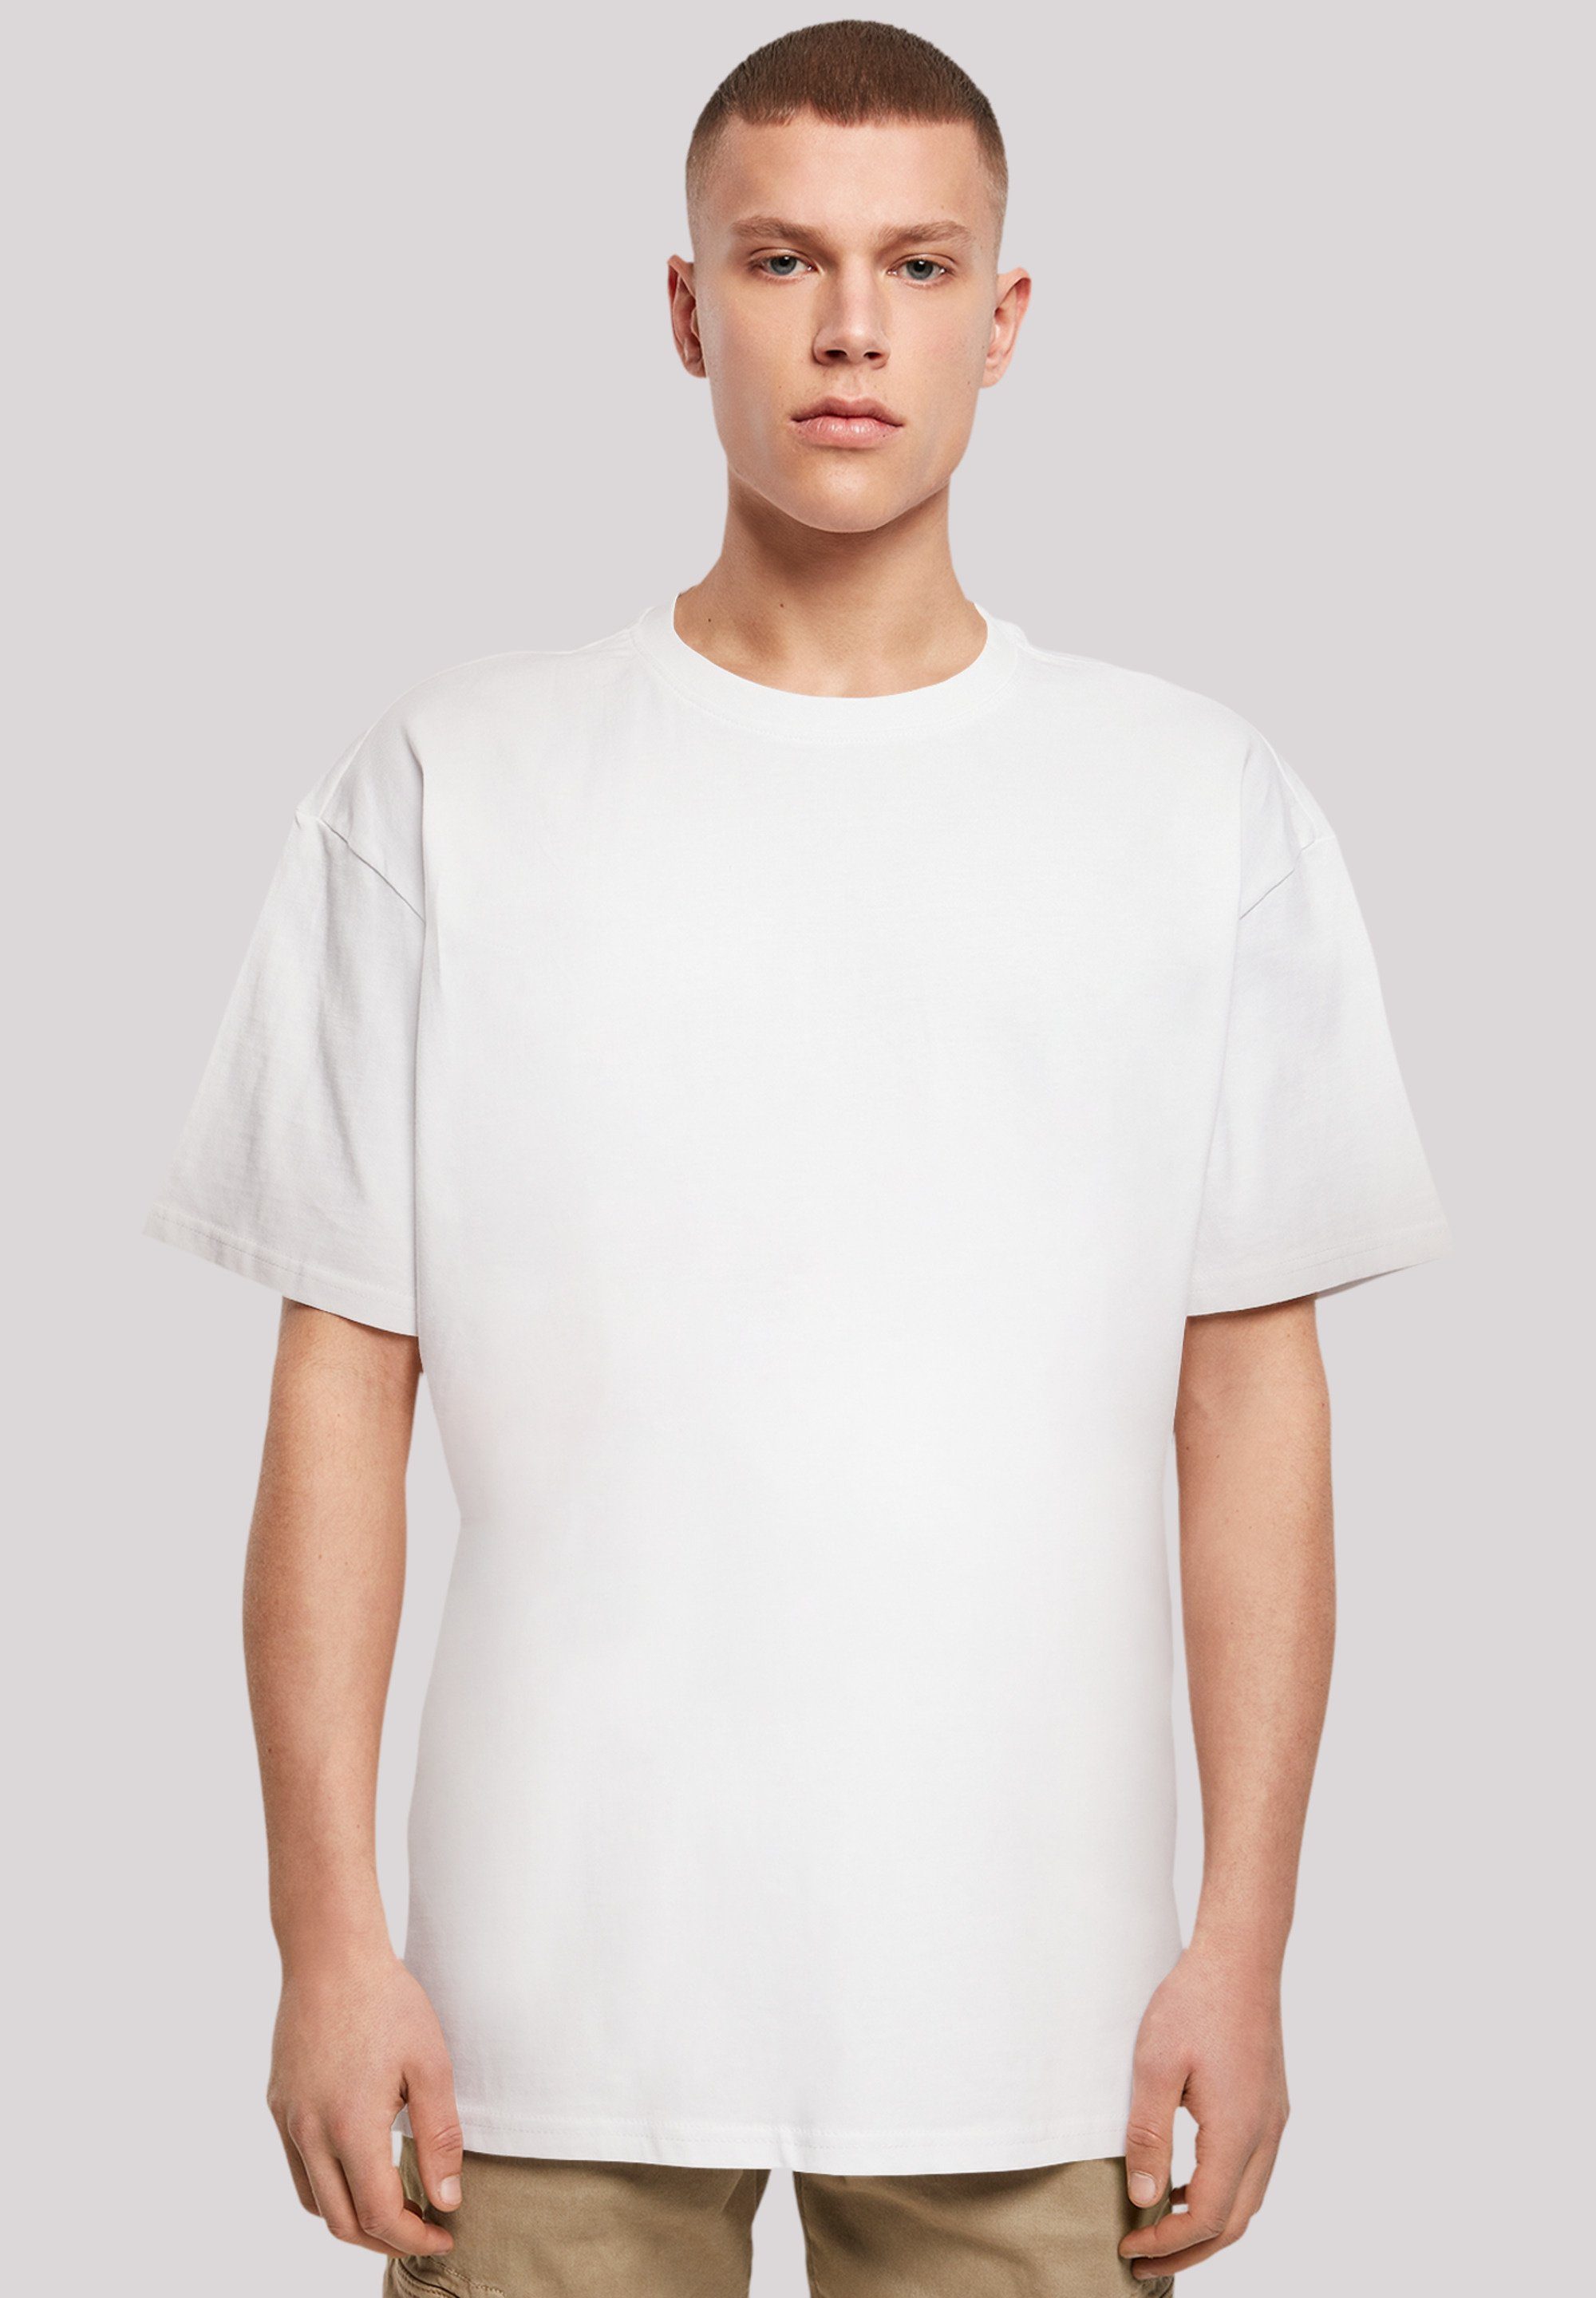 F4NT4STIC T-Shirt Namaste Yoga Skelett Halloween Print, Weite Passform und  überschnittene Schultern